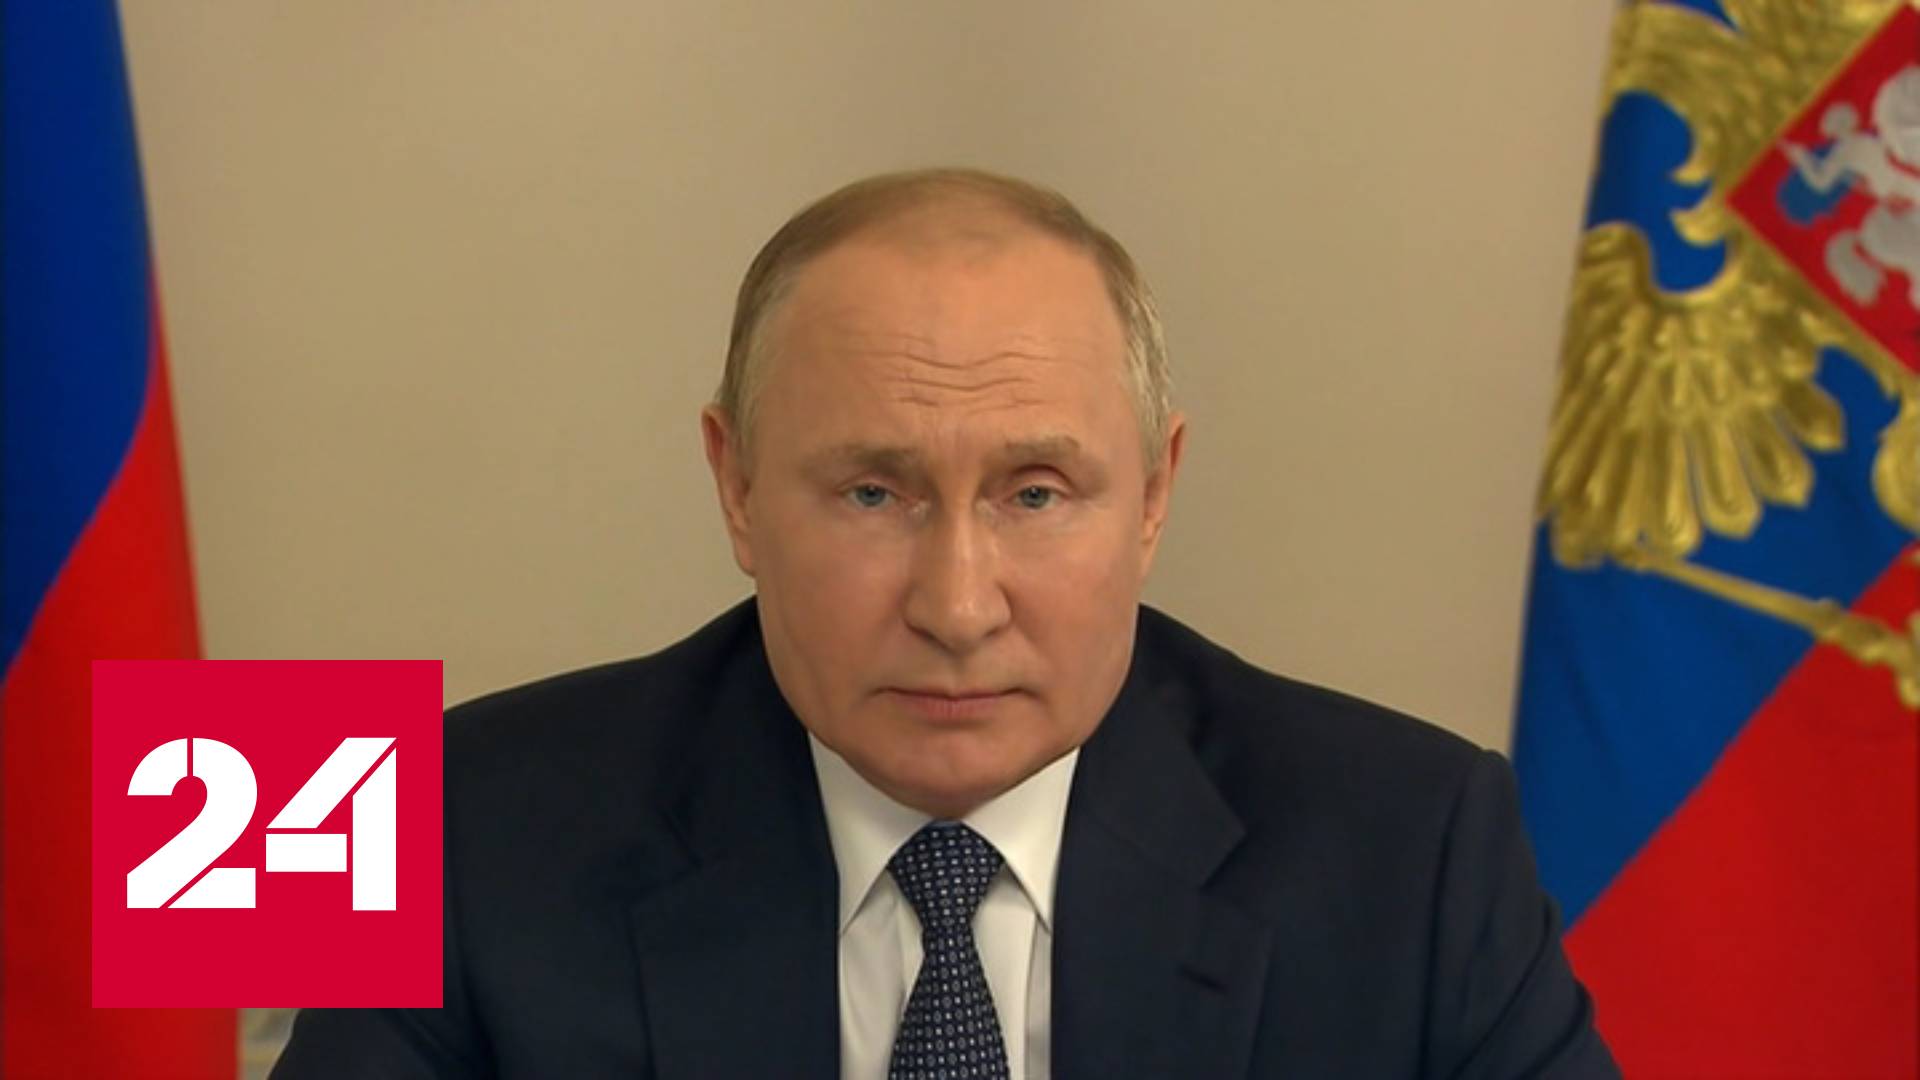 Путин: Запад виноват в создании хронических проблем в мировой экономике - Россия 24